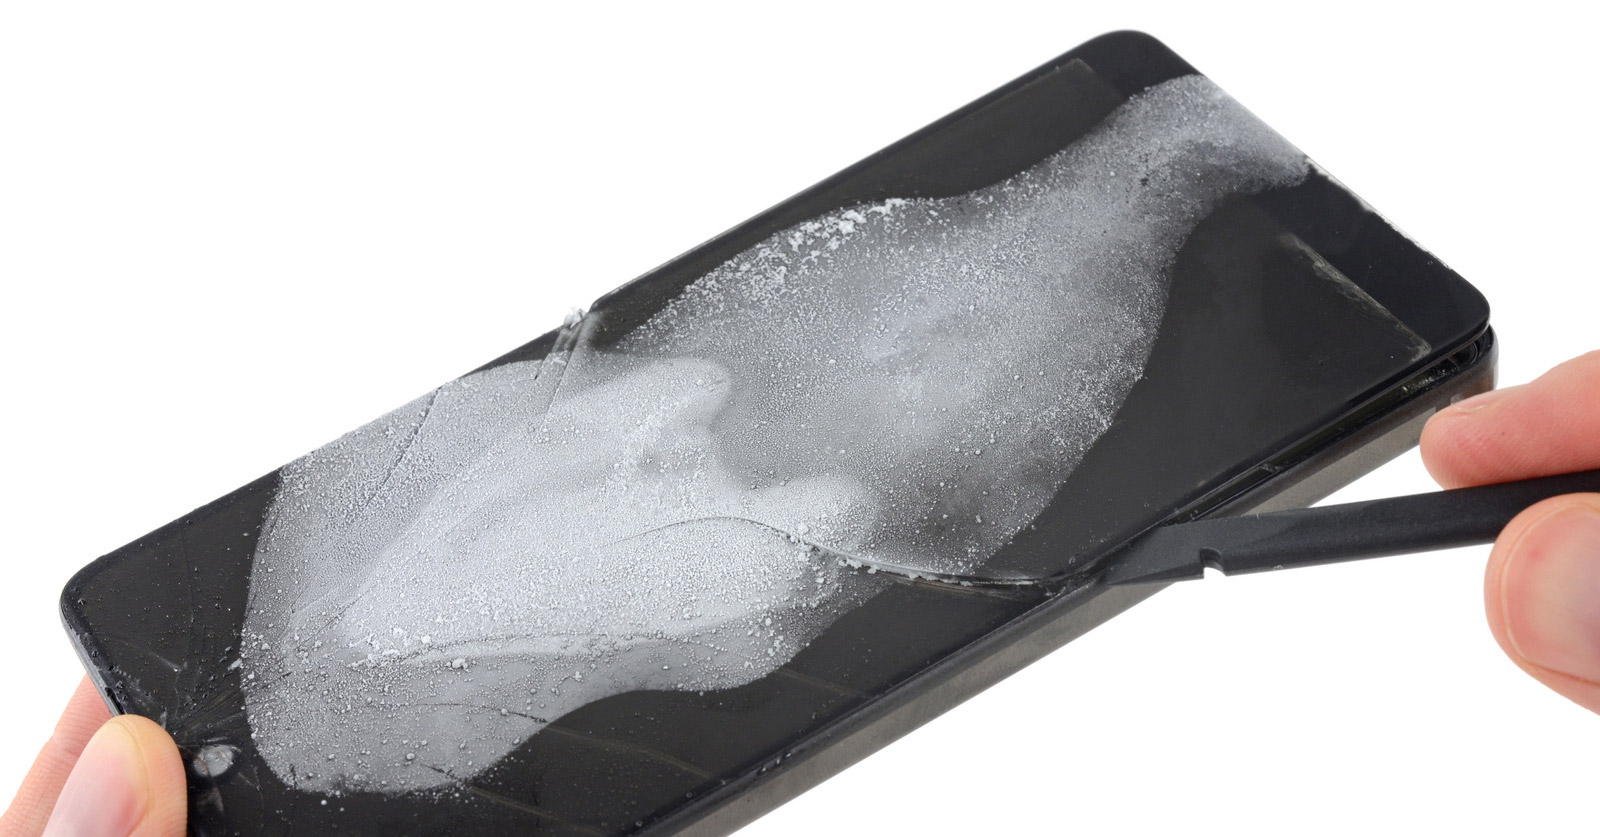 Bên trong Essential Phone: phải làm lạnh mới mở ra được, rất khó sửa, 1 điểm iFixit